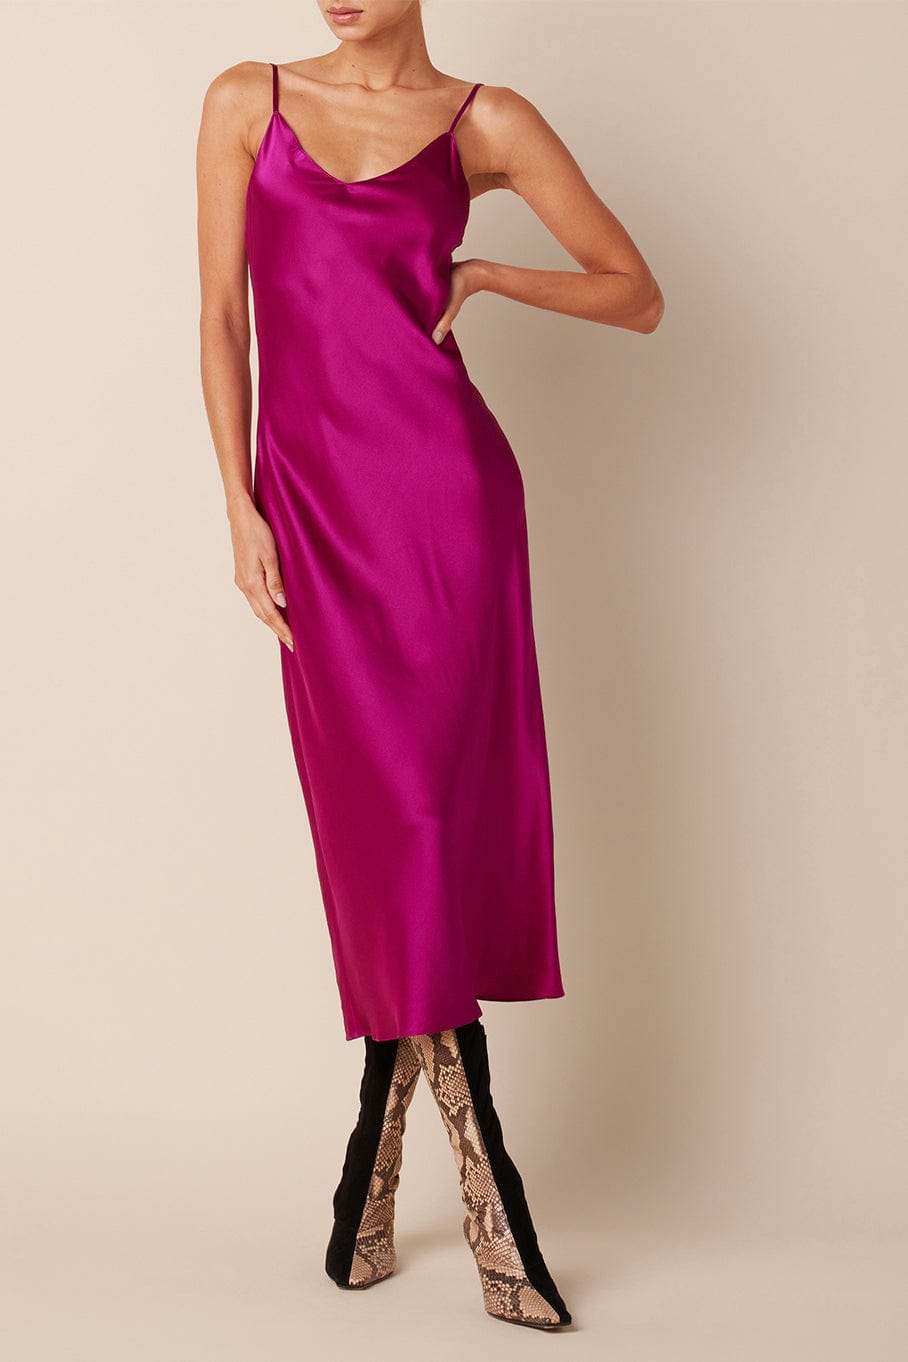 Taylor Silk Slip Dress CLOTHINGDRESSCASUAL SABLYN   